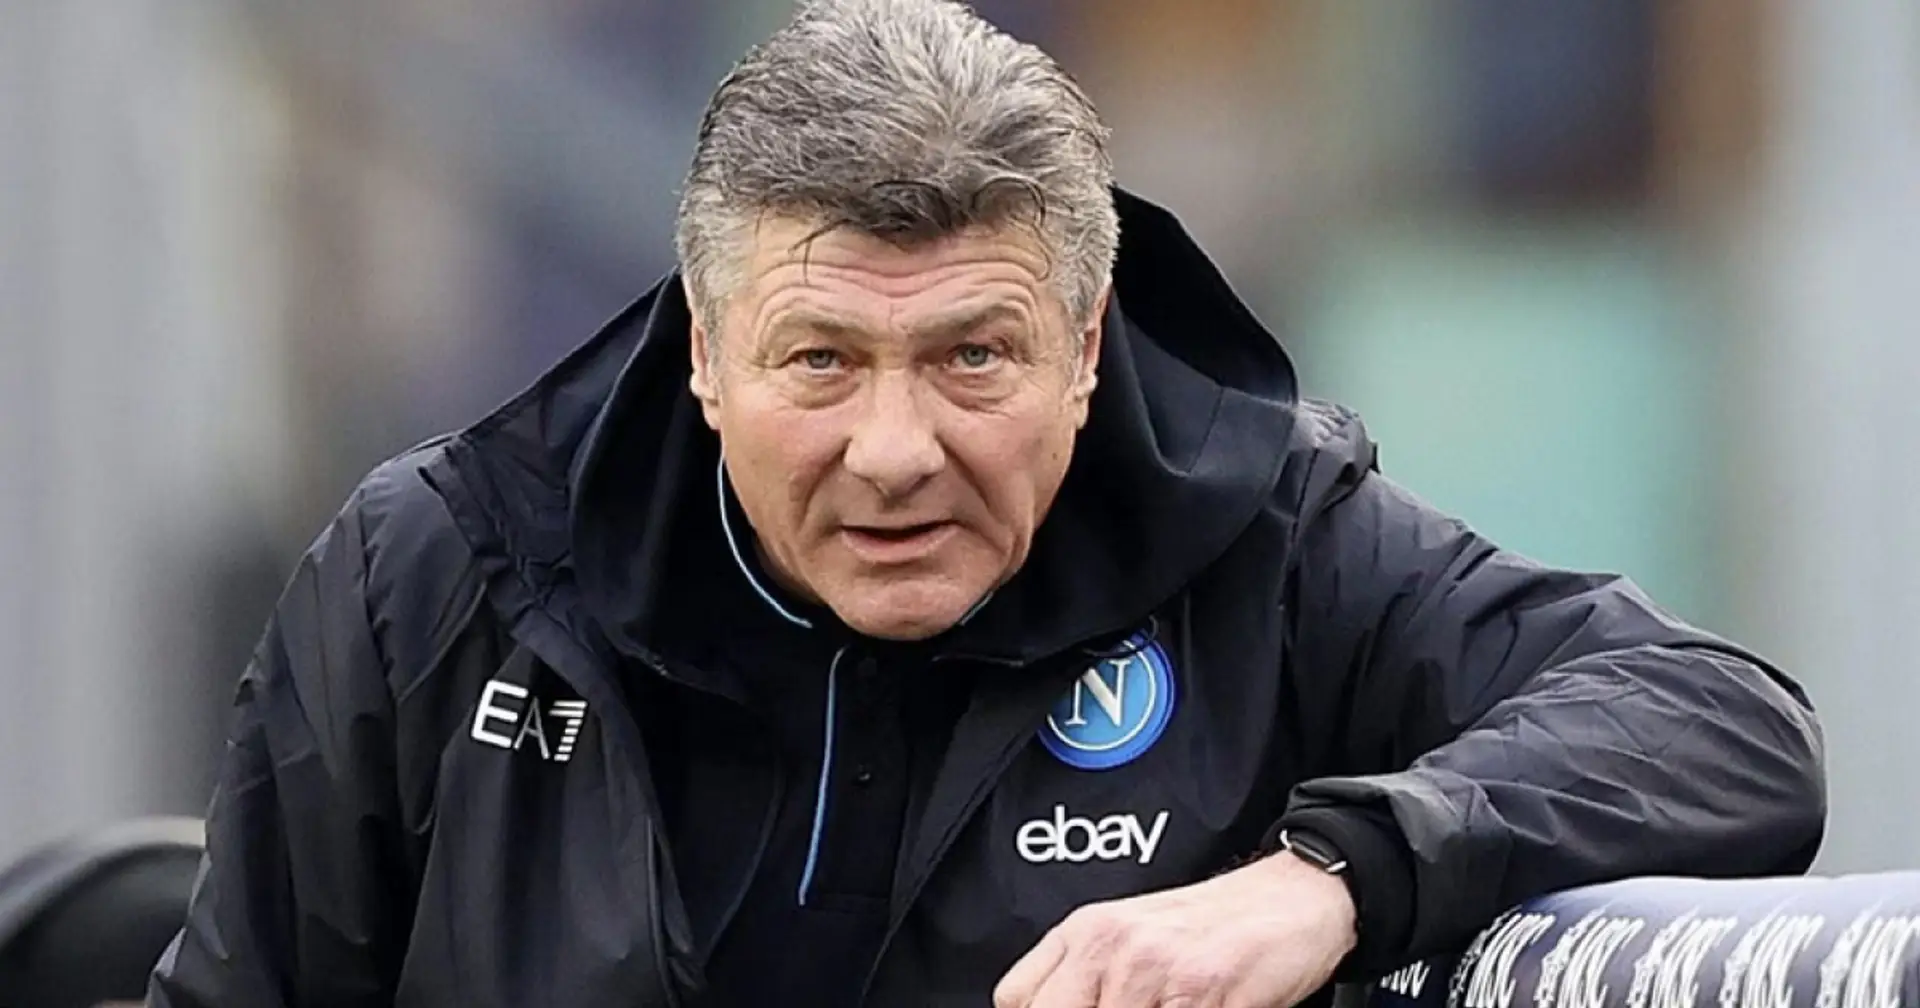 Napoli sack head coach 2 days before Barca game, pick replacement – Fabrizio Romano